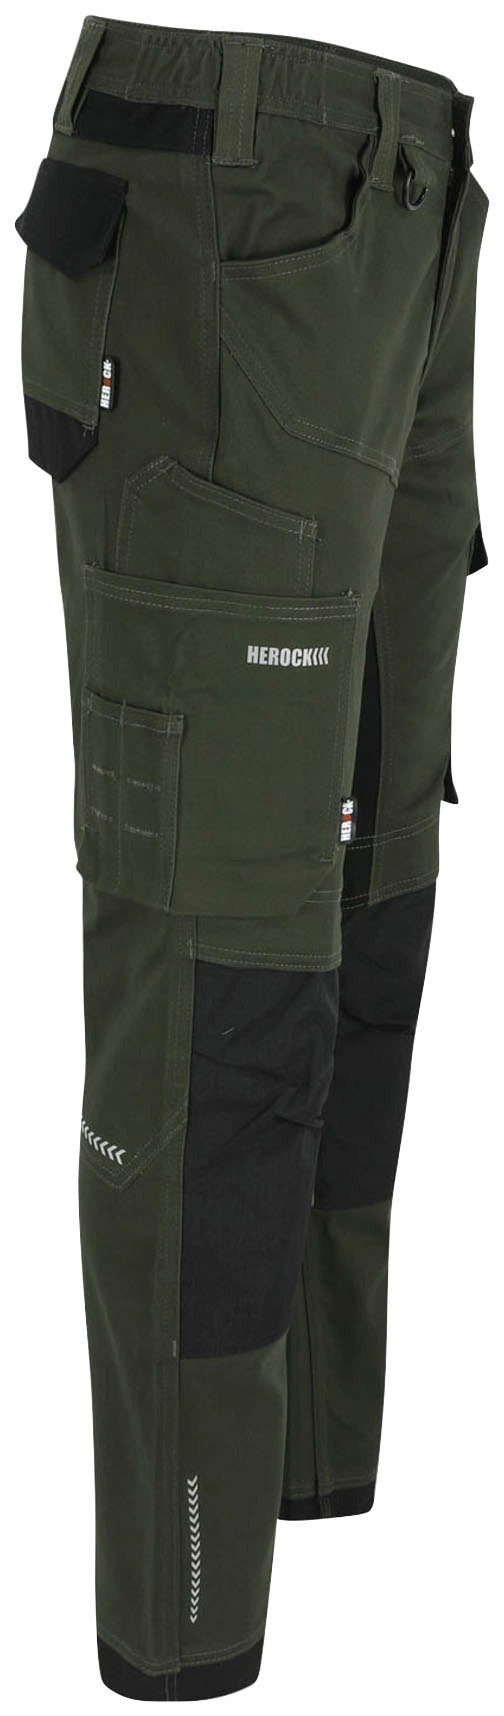 Herock Arbeitshose XENI Multi-pocket, Stretch, Baumwolle, weich khaki bequem und wasserabweisend